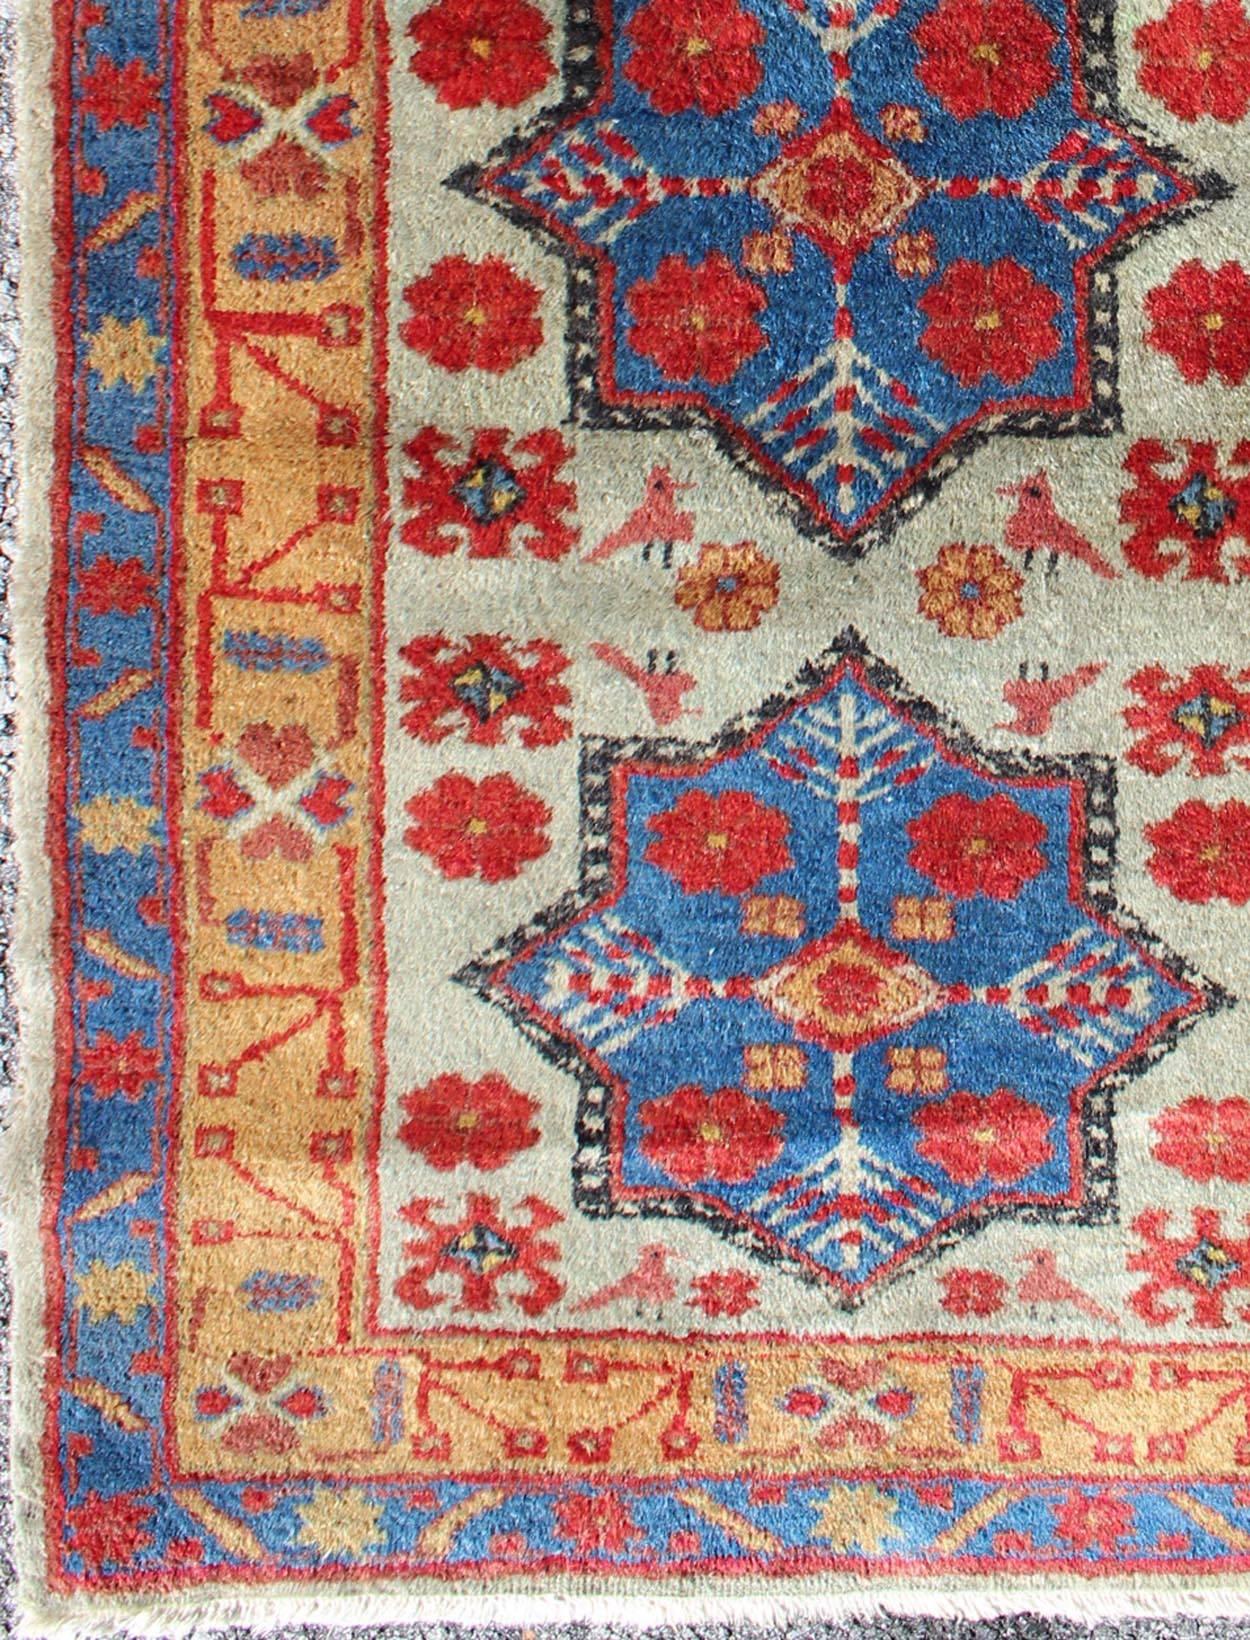 Vieux tapis turc noué à la main en laine fine et en excellent état, tapis Keivan Woven Arts tu-mev-3350, pays d'origine / type : Turquie / Oushak, vers le milieu du 20ème siècle

Mesures : 2.4 x 4.5

 Ce tapis turc vintage coloré du milieu du 20e